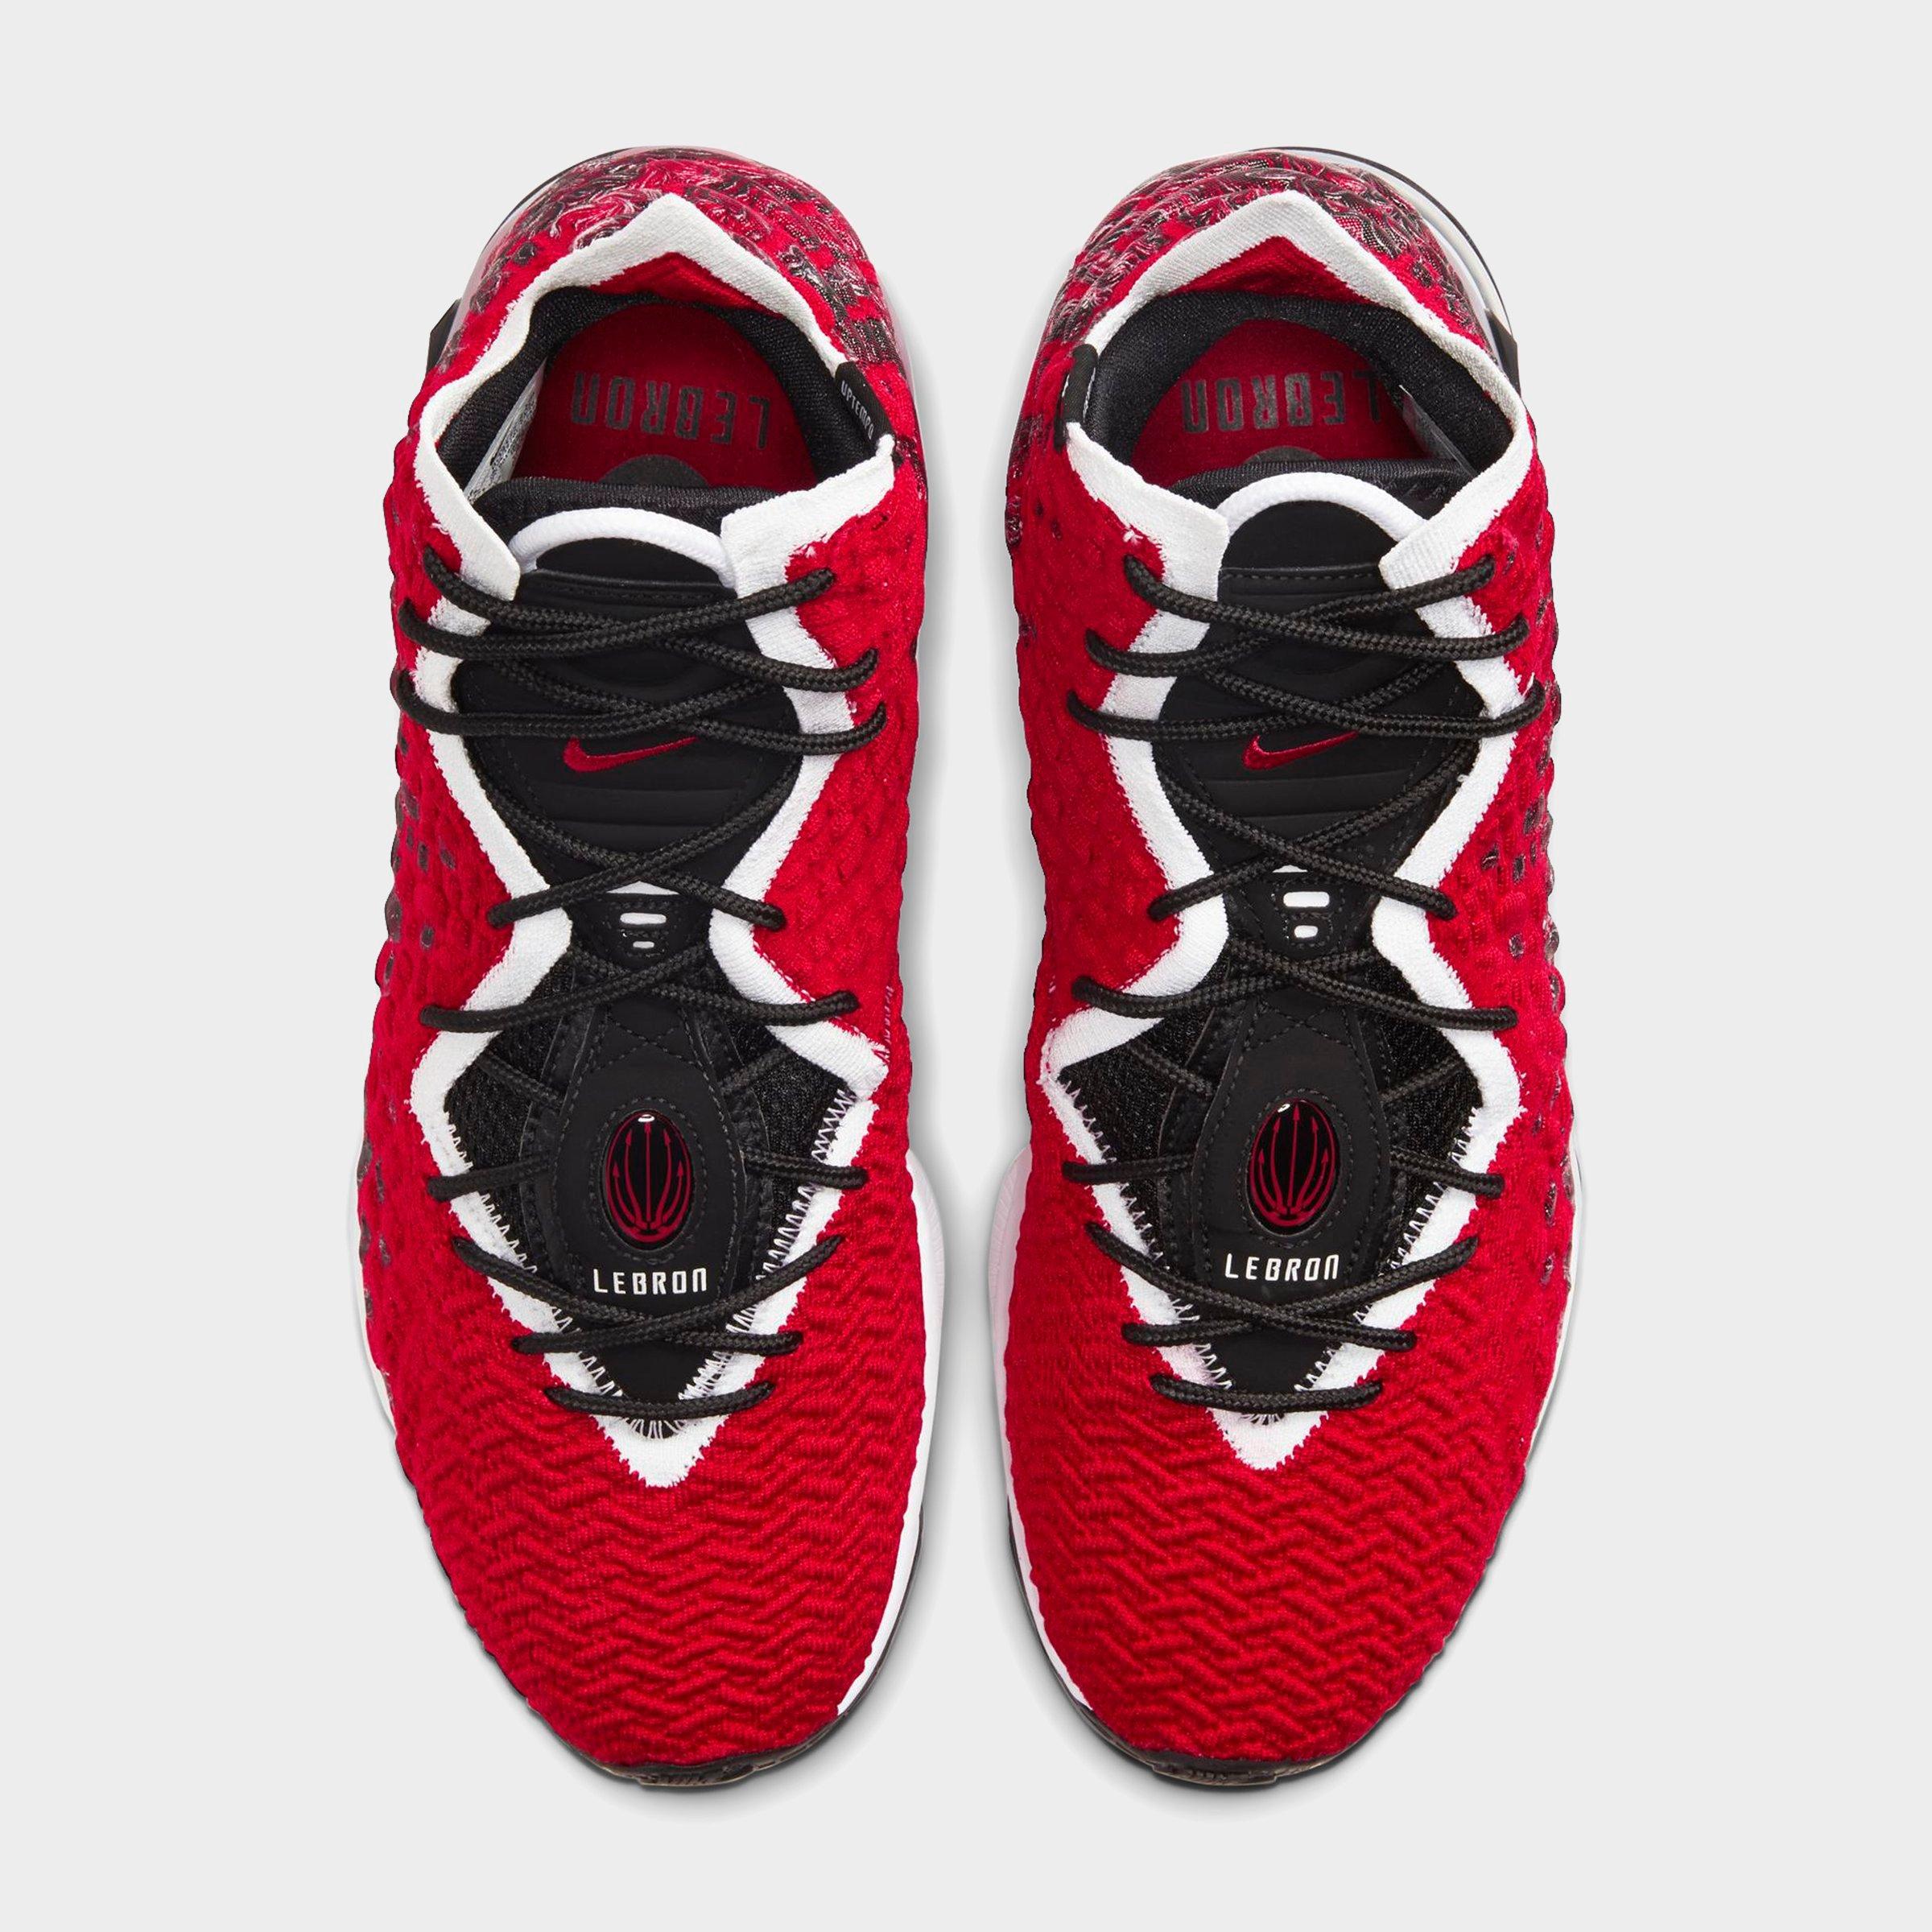 Nike LeBron 17 Basketball Shoes (Sizes 